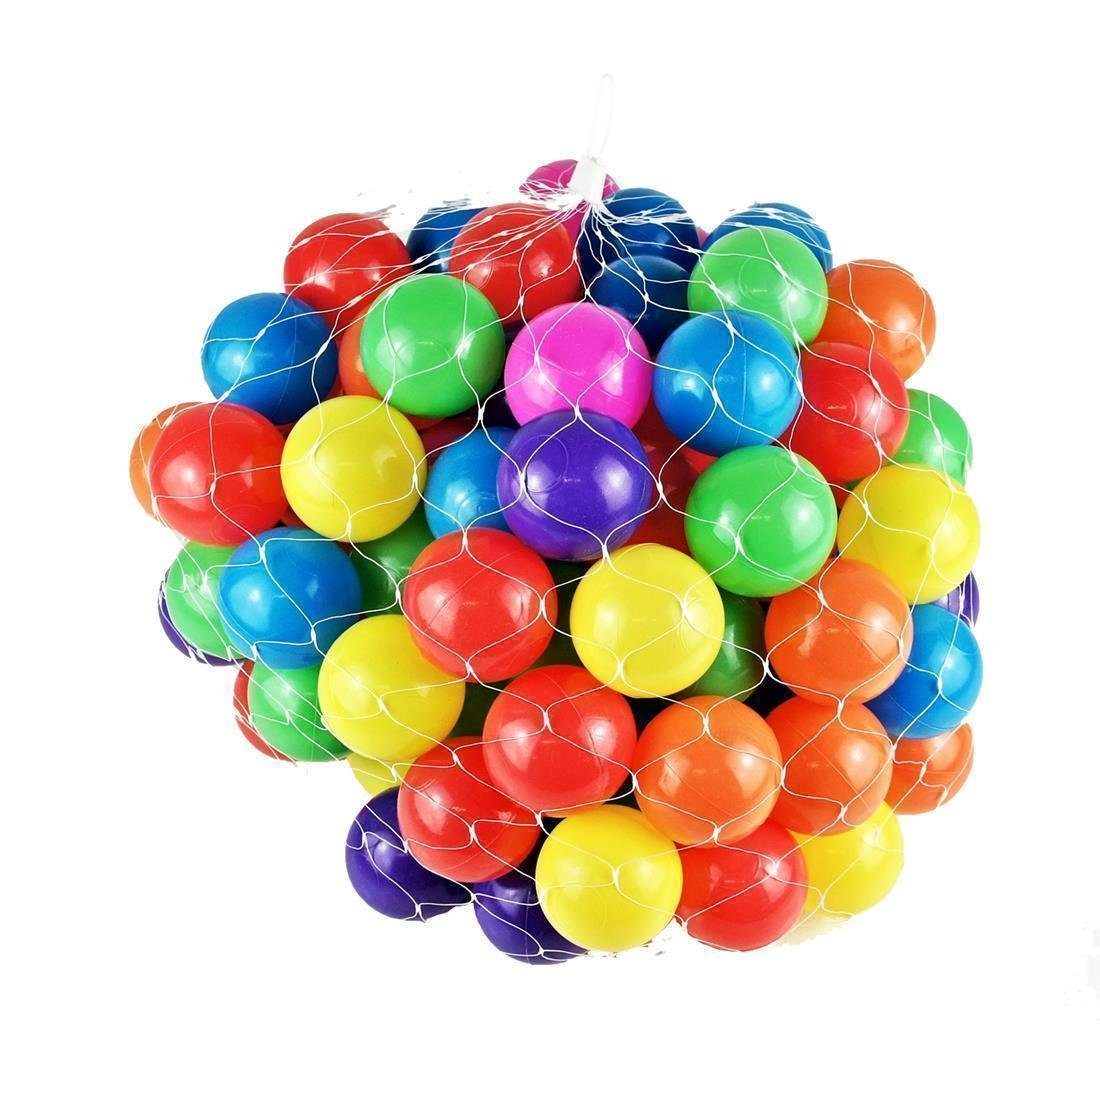 5,5cm Softball BAYLI - - Bällebad Bälle Mischung Ø Ball Bällebad-Bälle 1500 bunte Farben